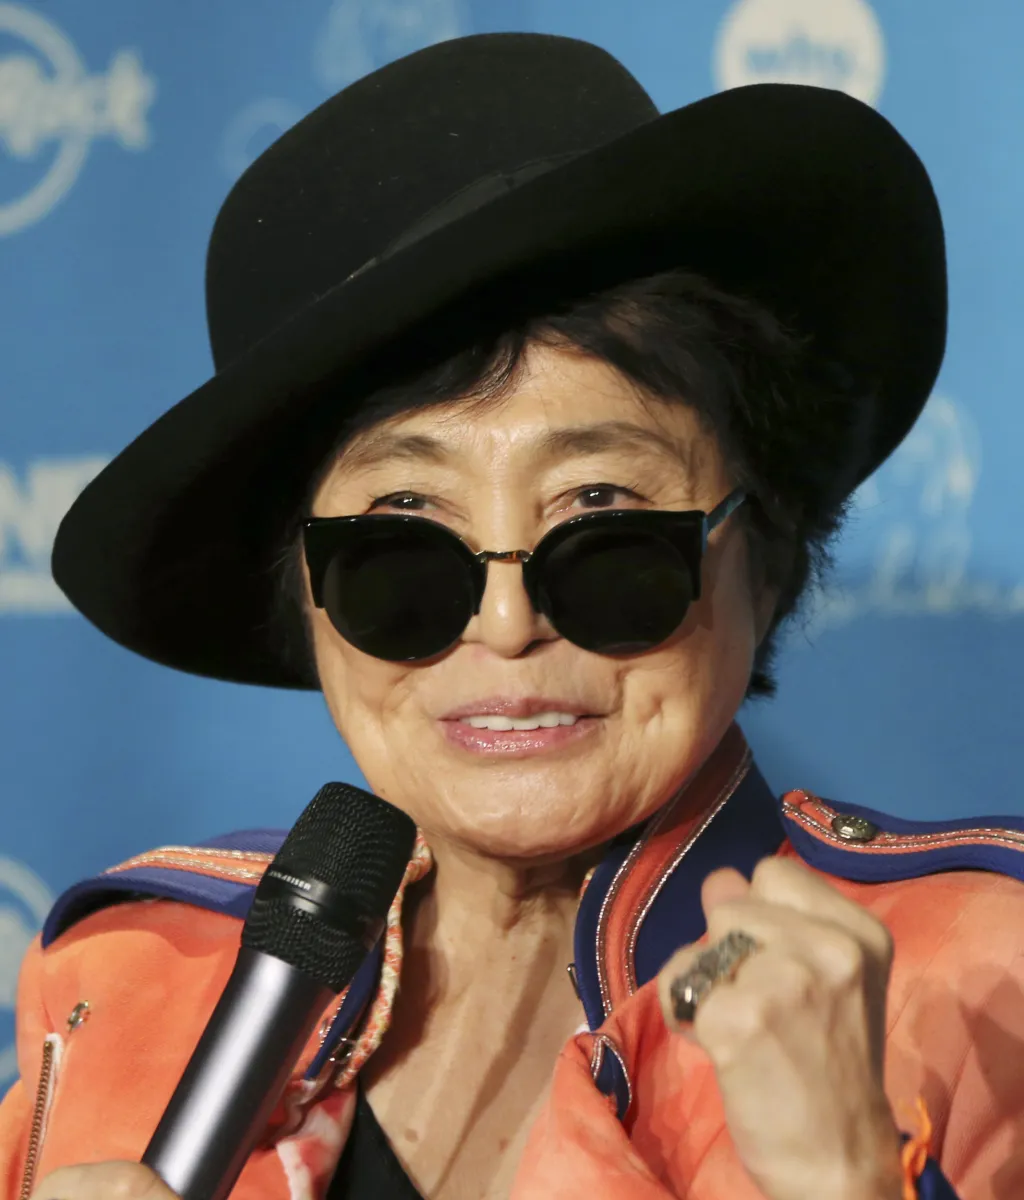 Yoko Ono, japonsko-americká výtvarná umělkyně, měla v semdesátých letech zásadní vliv na Lennonovo vidění světa. Přiblížila ho politickému aktivismu, kterému se Lennon věnoval až do své smrti. Vedl několik kampaní proti válečným konfliktům, postavil se proti rasismu, věnoval se i aktivitám v Africe. Jeho pro-mírová činnost se následně stala pro řadu aktivistických skupin téměr poselstvím